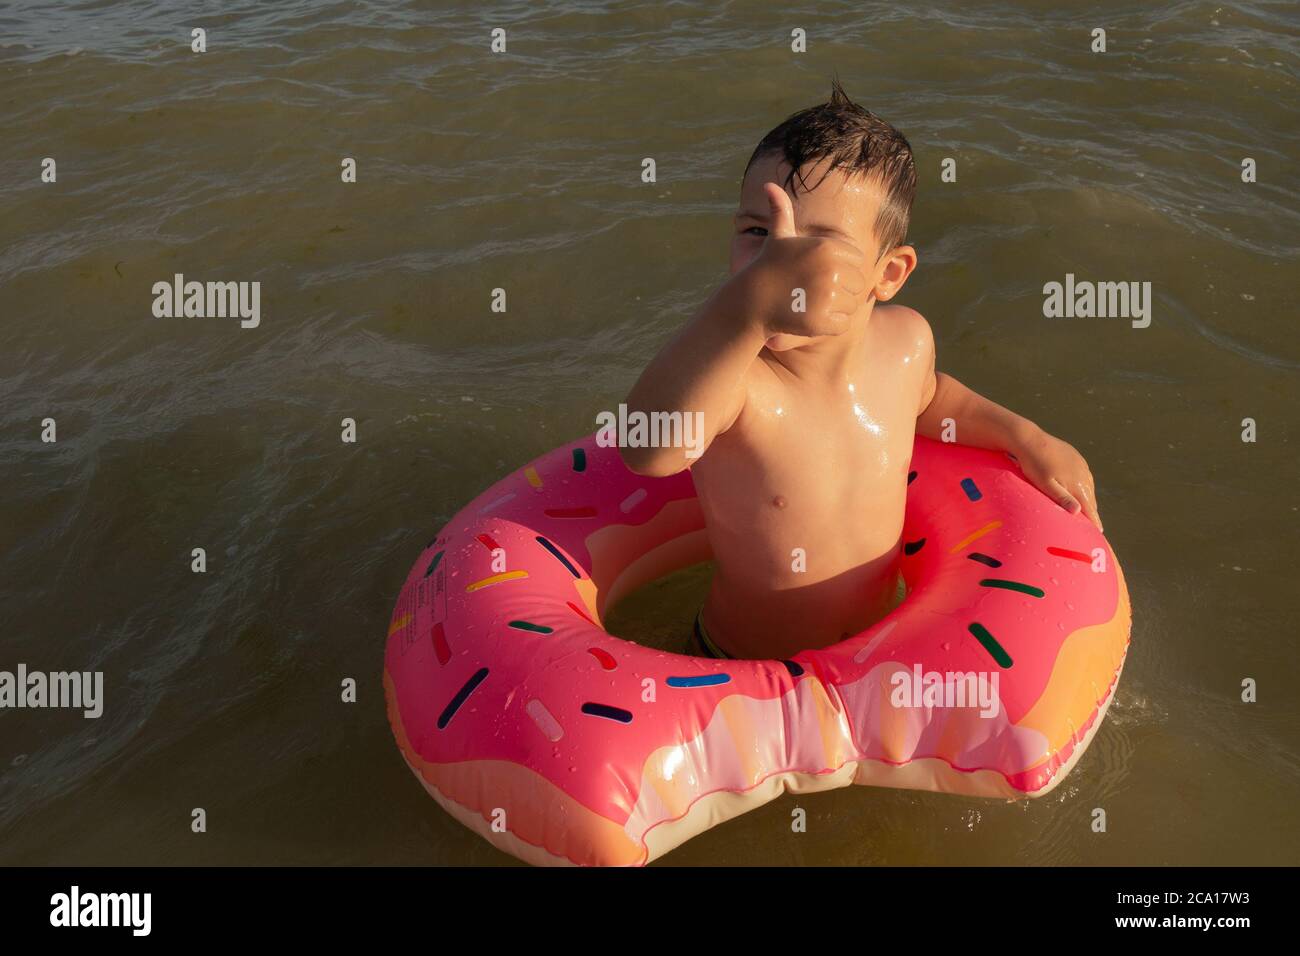 Un ragazzo di 5 anni nuota in mare con un cerchio gonfiabile a forma di ciambella e mostra un simile. Foto Stock